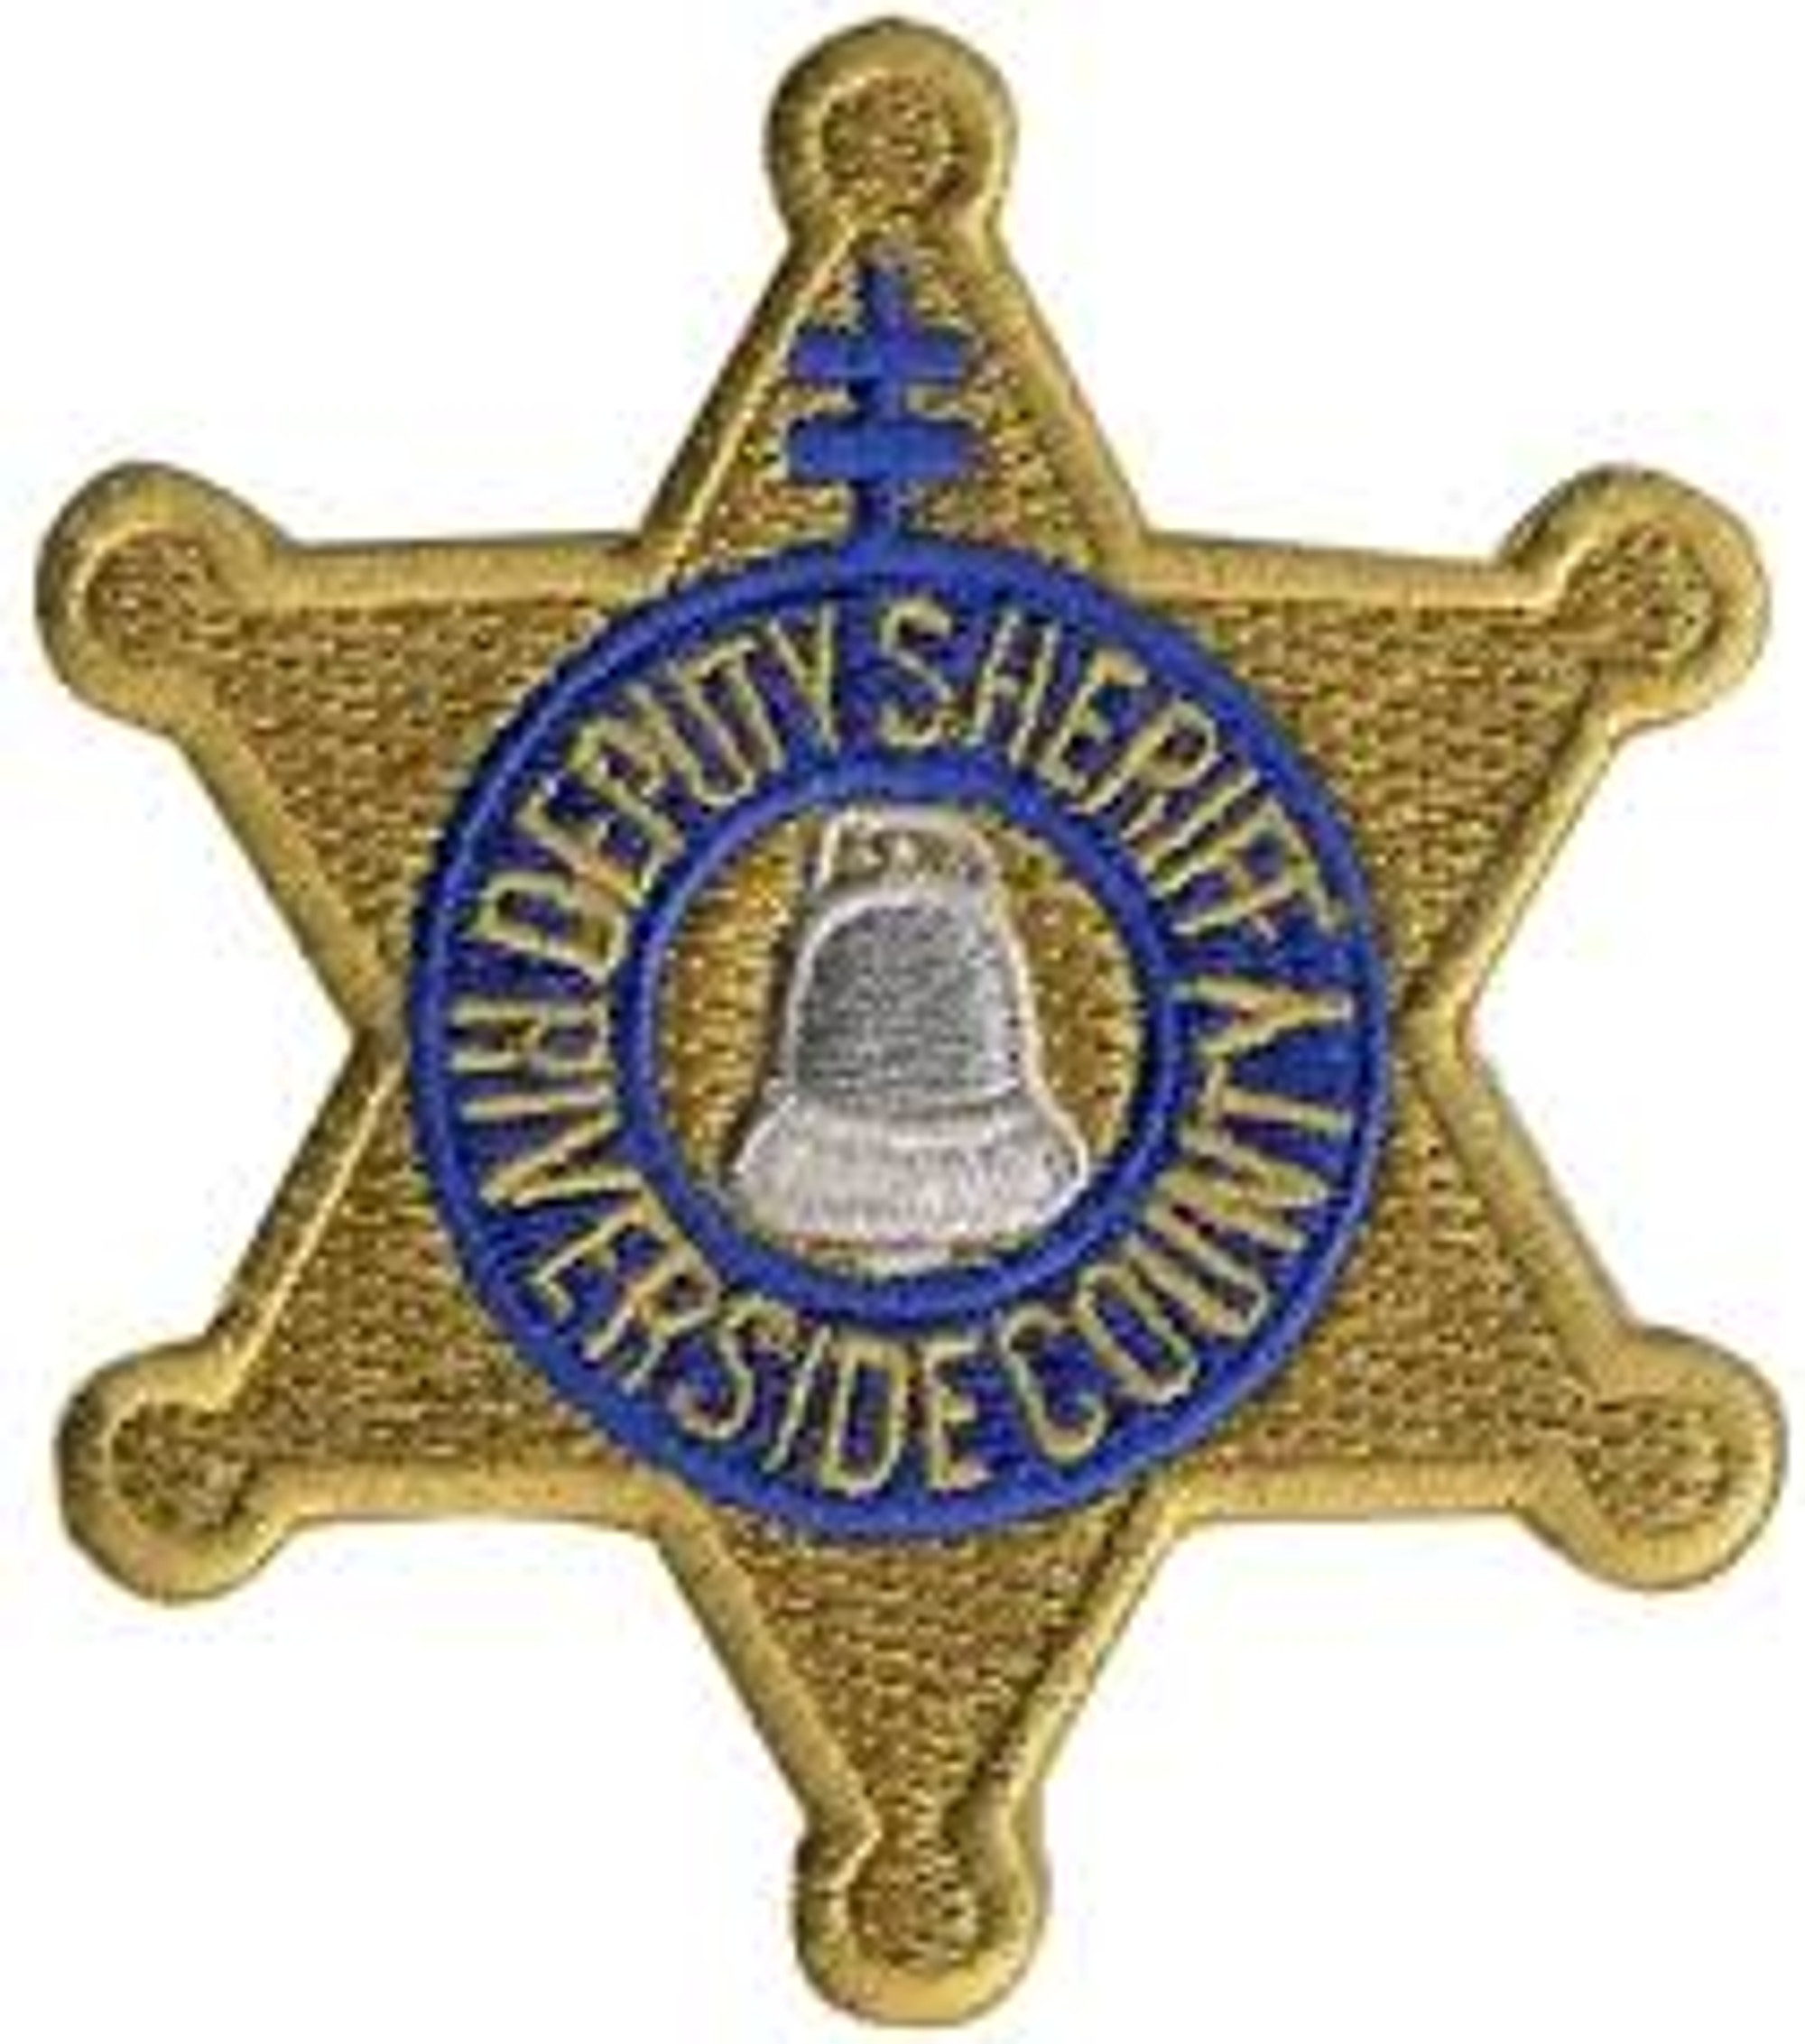 Riverside County Deputy Sheriff Police Patch